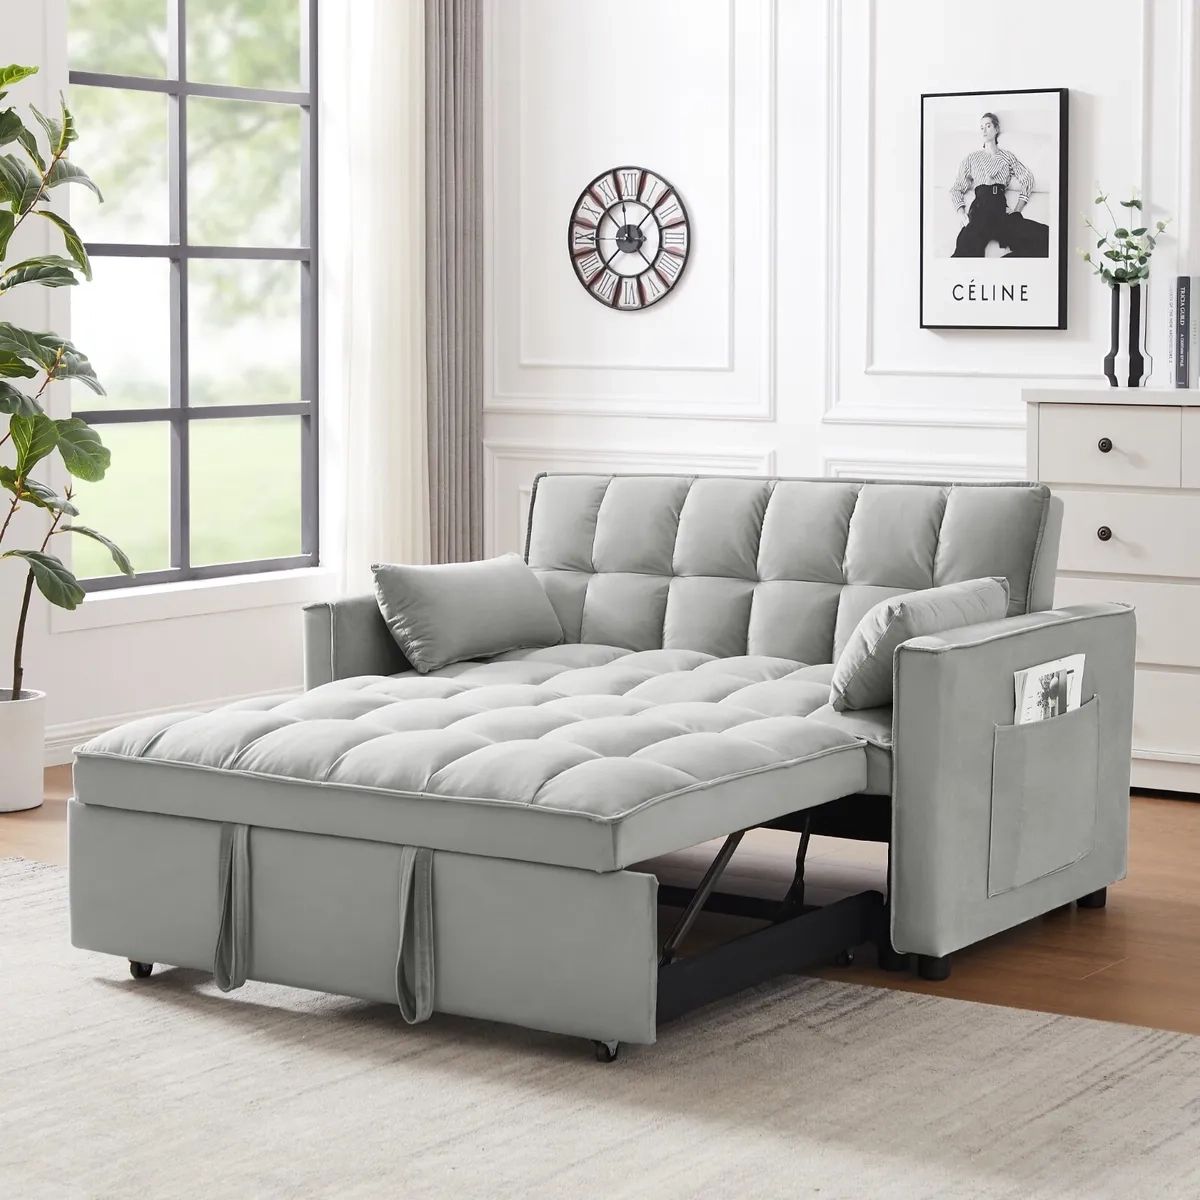 55" Convertible Sofa Bed Velvet Sleeper Loveseat Sofa Pull Out Bed W Pocket  Gray | Ebay Inside Convertible Gray Loveseat Sleepers (View 10 of 15)